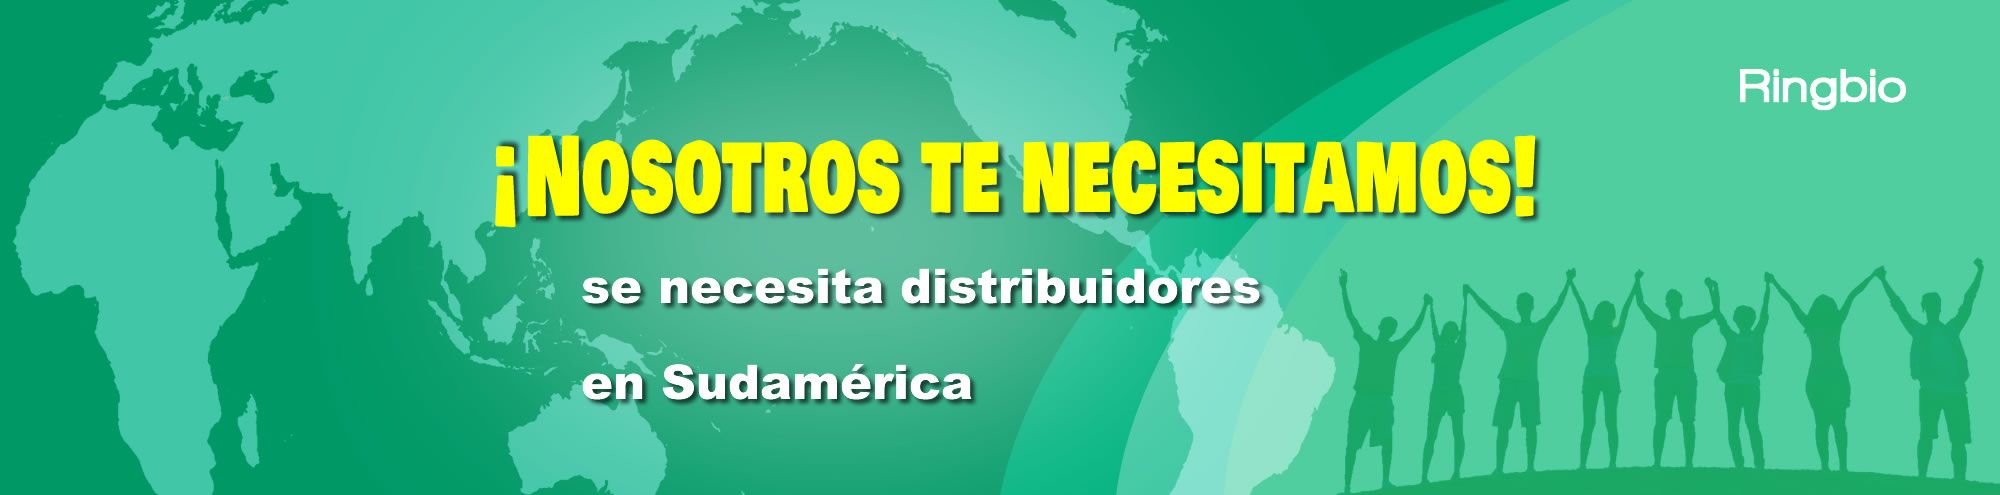 Ringbio necesita muchos distribuidores en Sudamérica!